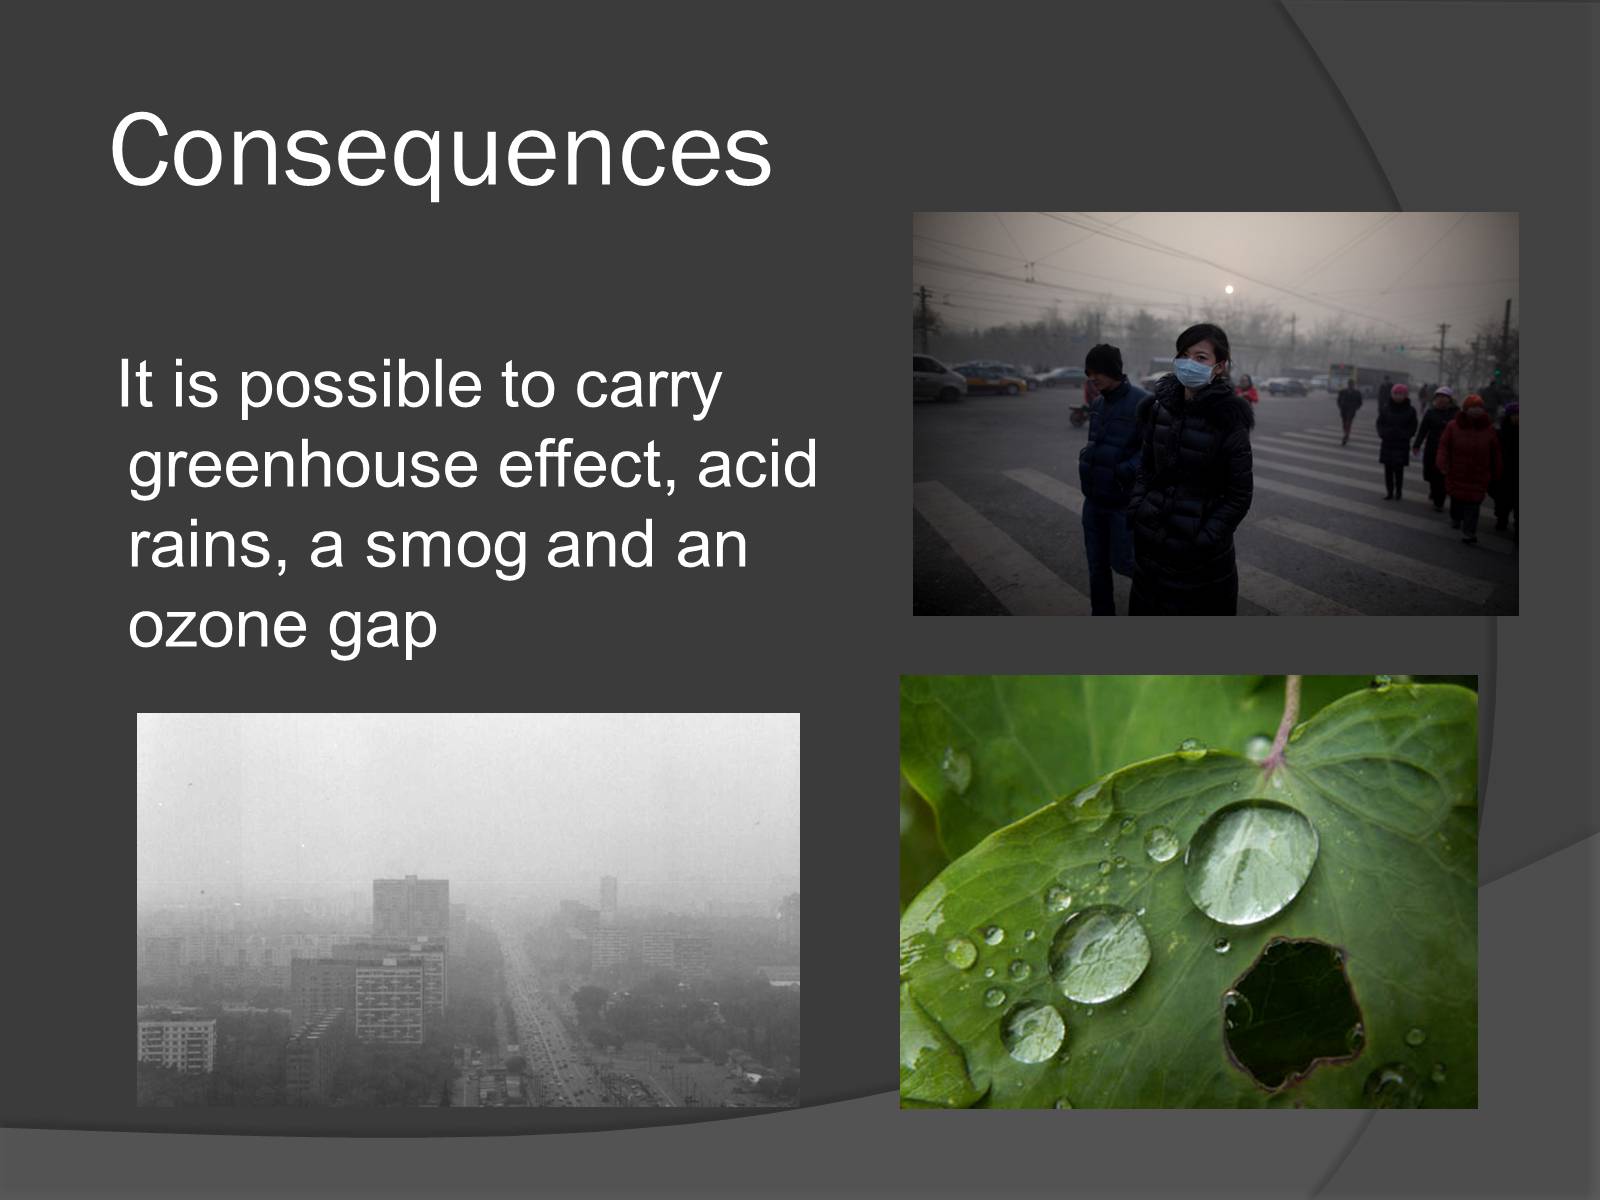 Смог кислотные дожди. Consequences of pollution. Презентация по английскому на тему загрязнение окружающей среды. Парниковый эффект и кислотные дожди.